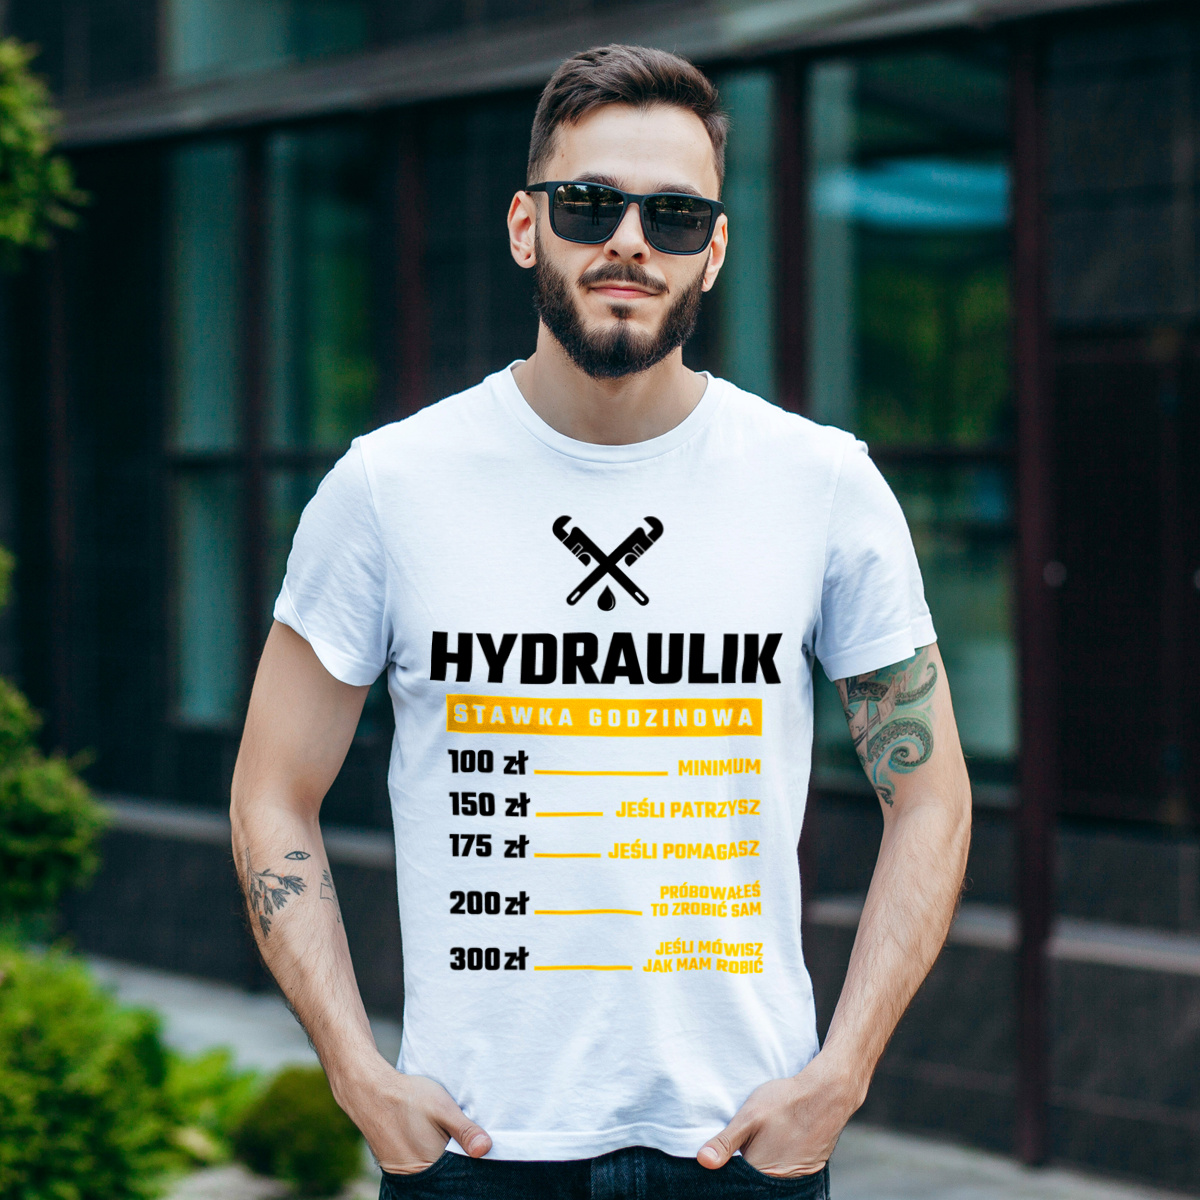 Stawka Godzinowa Hydraulik - Męska Koszulka Biała